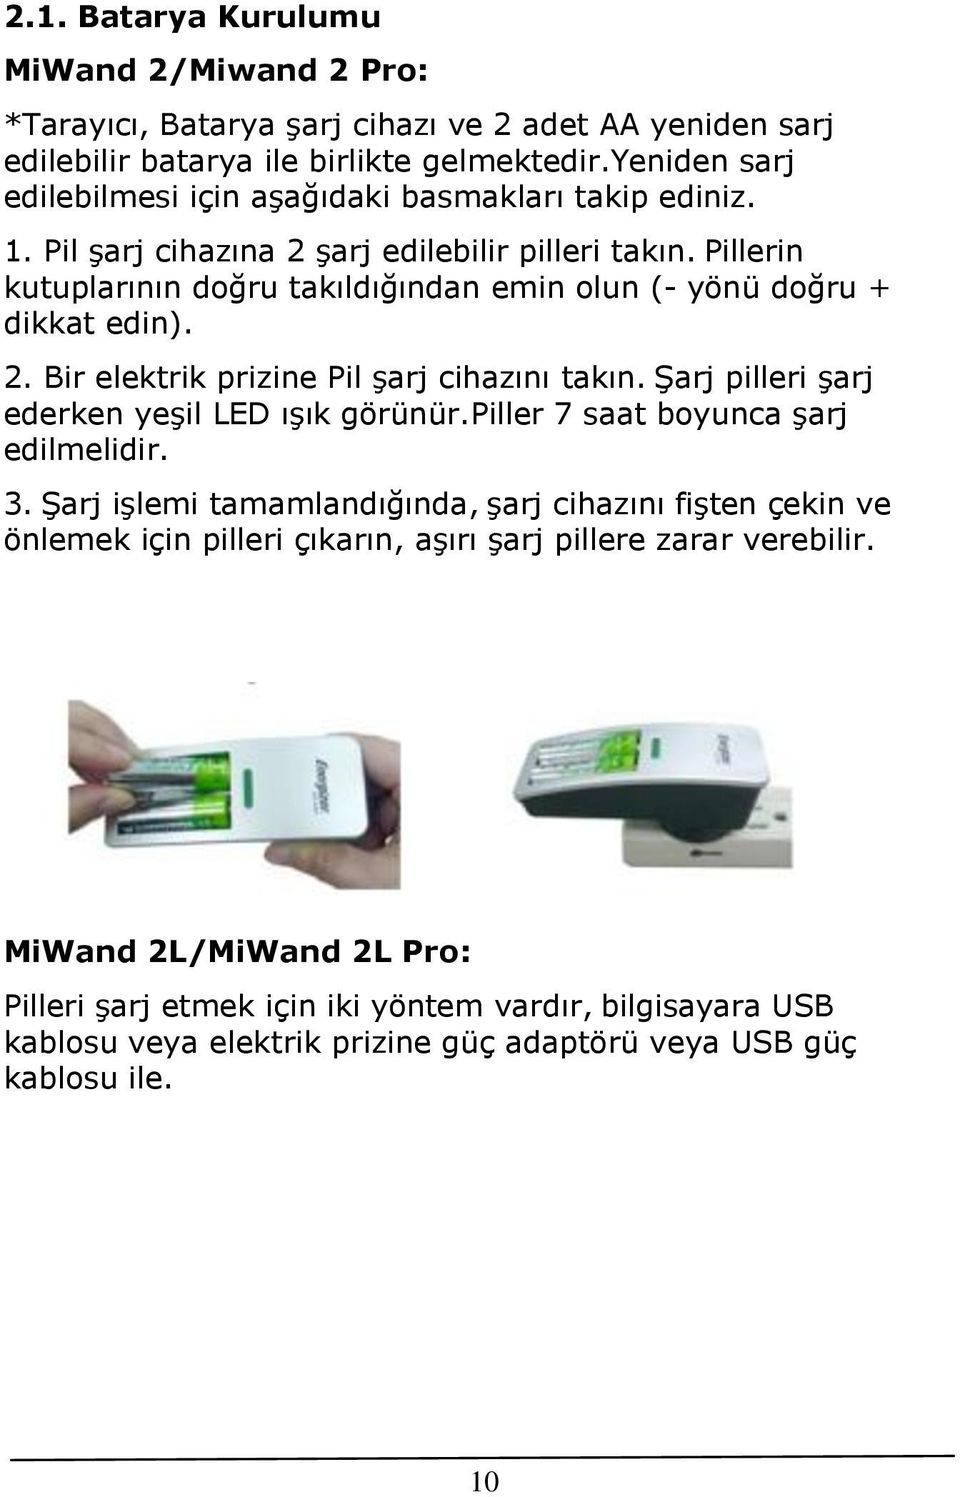 Pillerin kutuplarının doğru takıldığından emin olun (- yönü doğru + dikkat edin). 2. Bir elektrik prizine Pil şarj cihazını takın. Şarj pilleri şarj ederken yeşil LED ışık görünür.